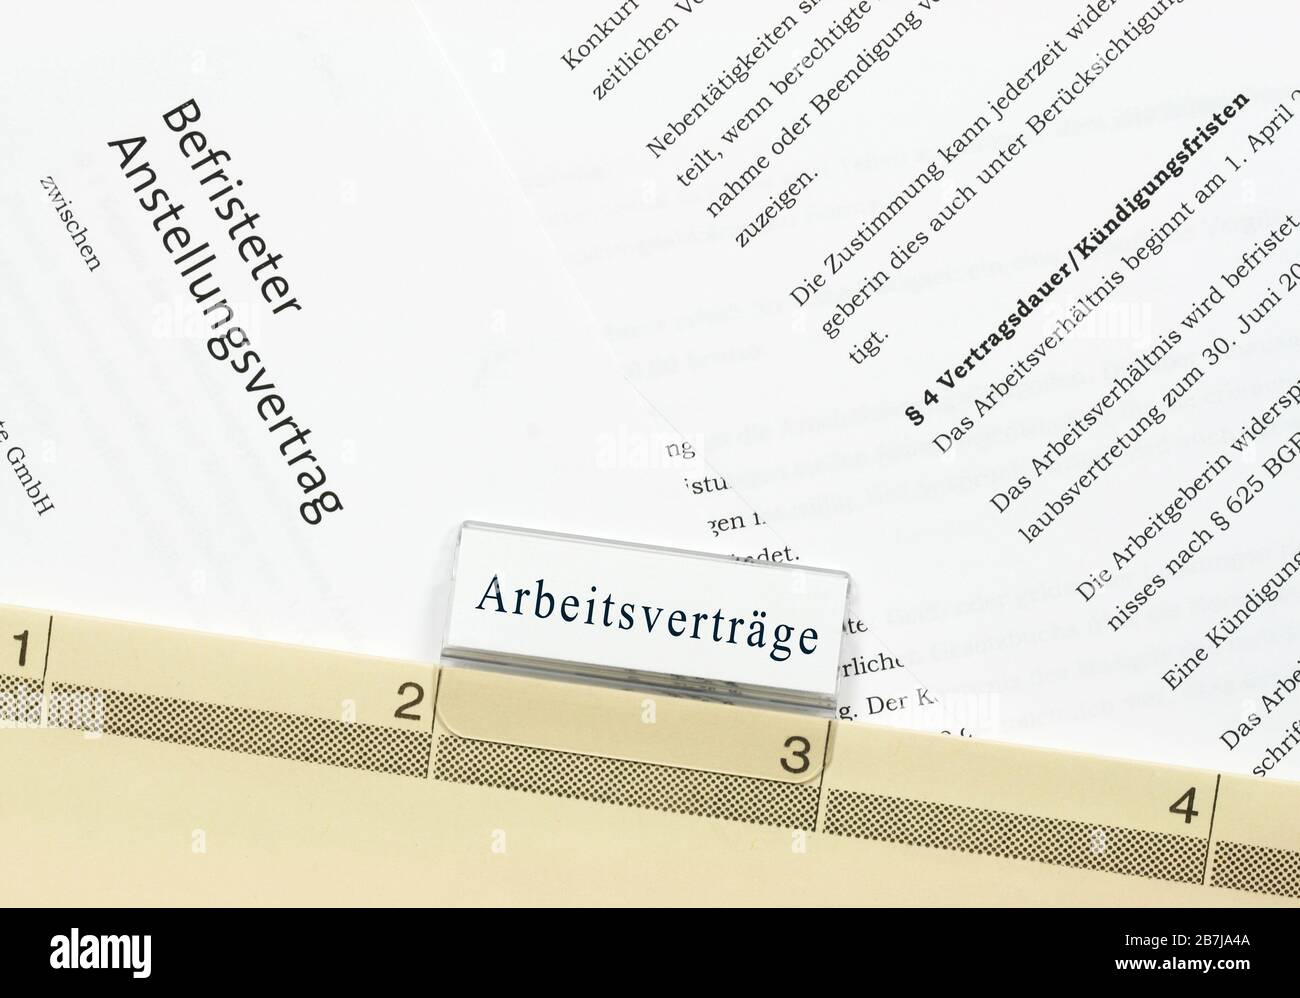 Befrister Arbeitsvertrag: Contrat allemand d'emploi à court terme, archivé dans un dossier suspendu Banque D'Images